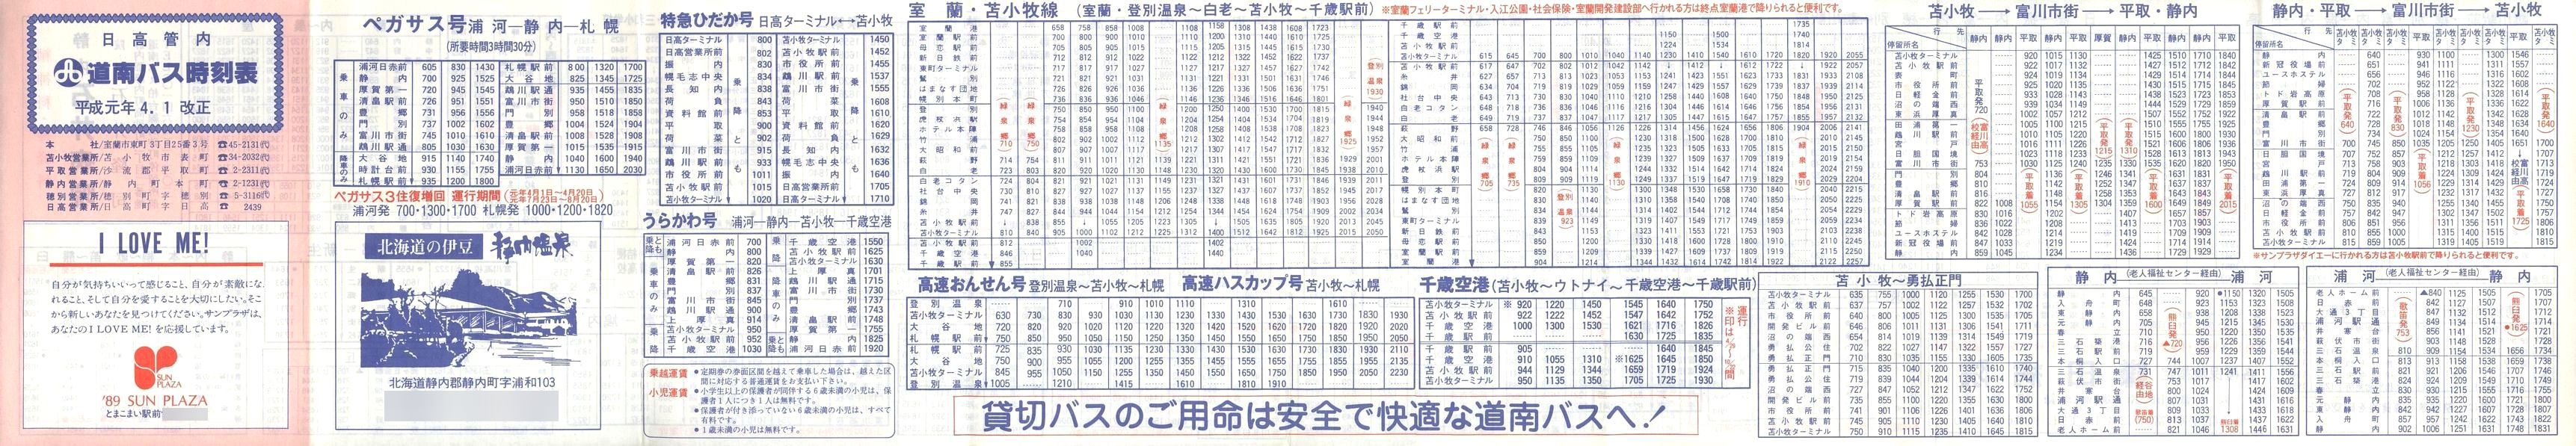 1989-04-01改正_道南バス_日高管内時刻表表面